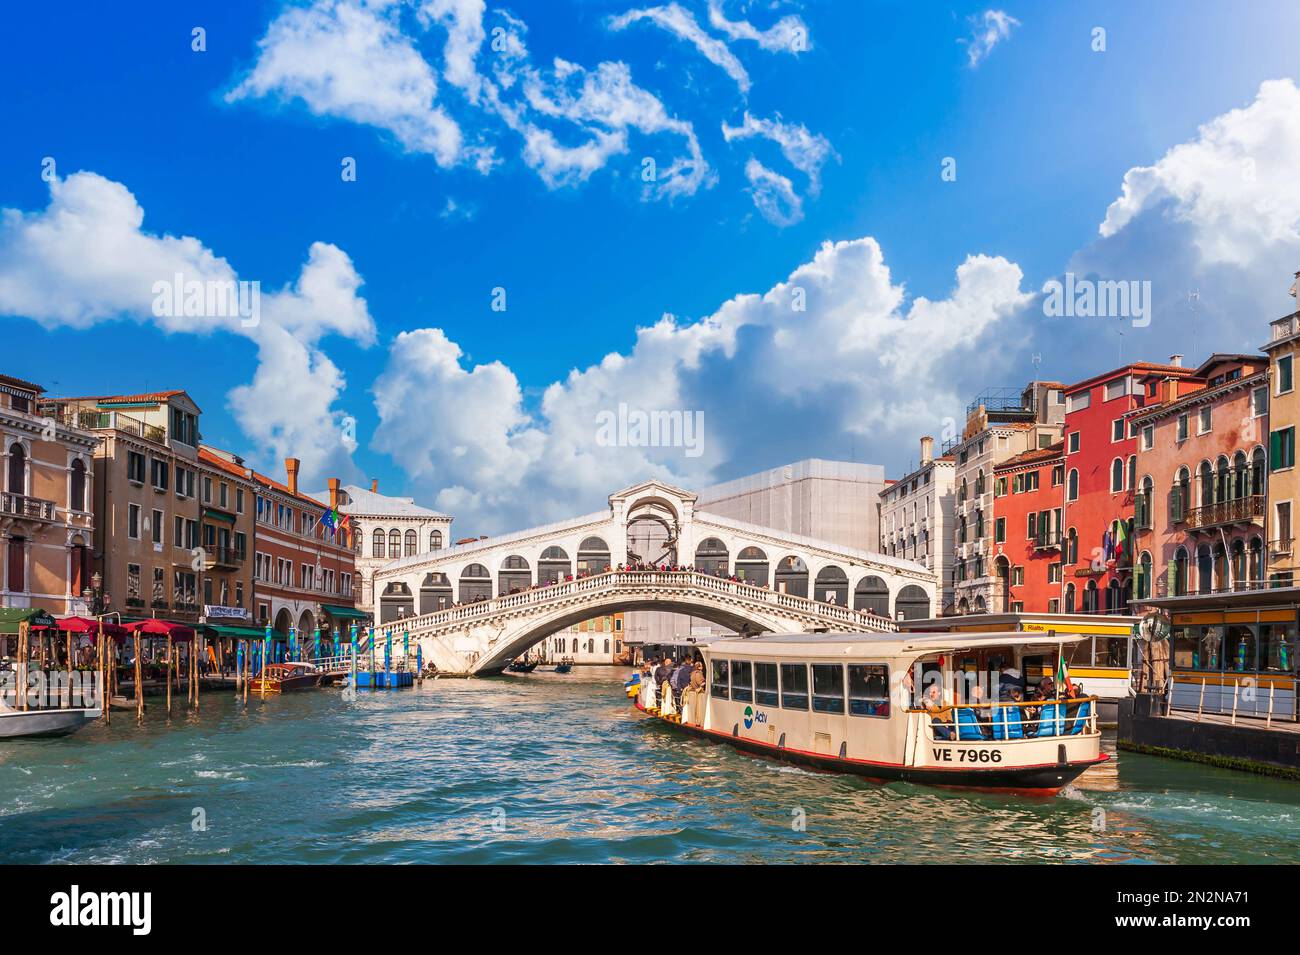 A vaporetto on the Grand Canal in front of the Rialto Bridge in Venice, Veneto, Italy Stock Photo